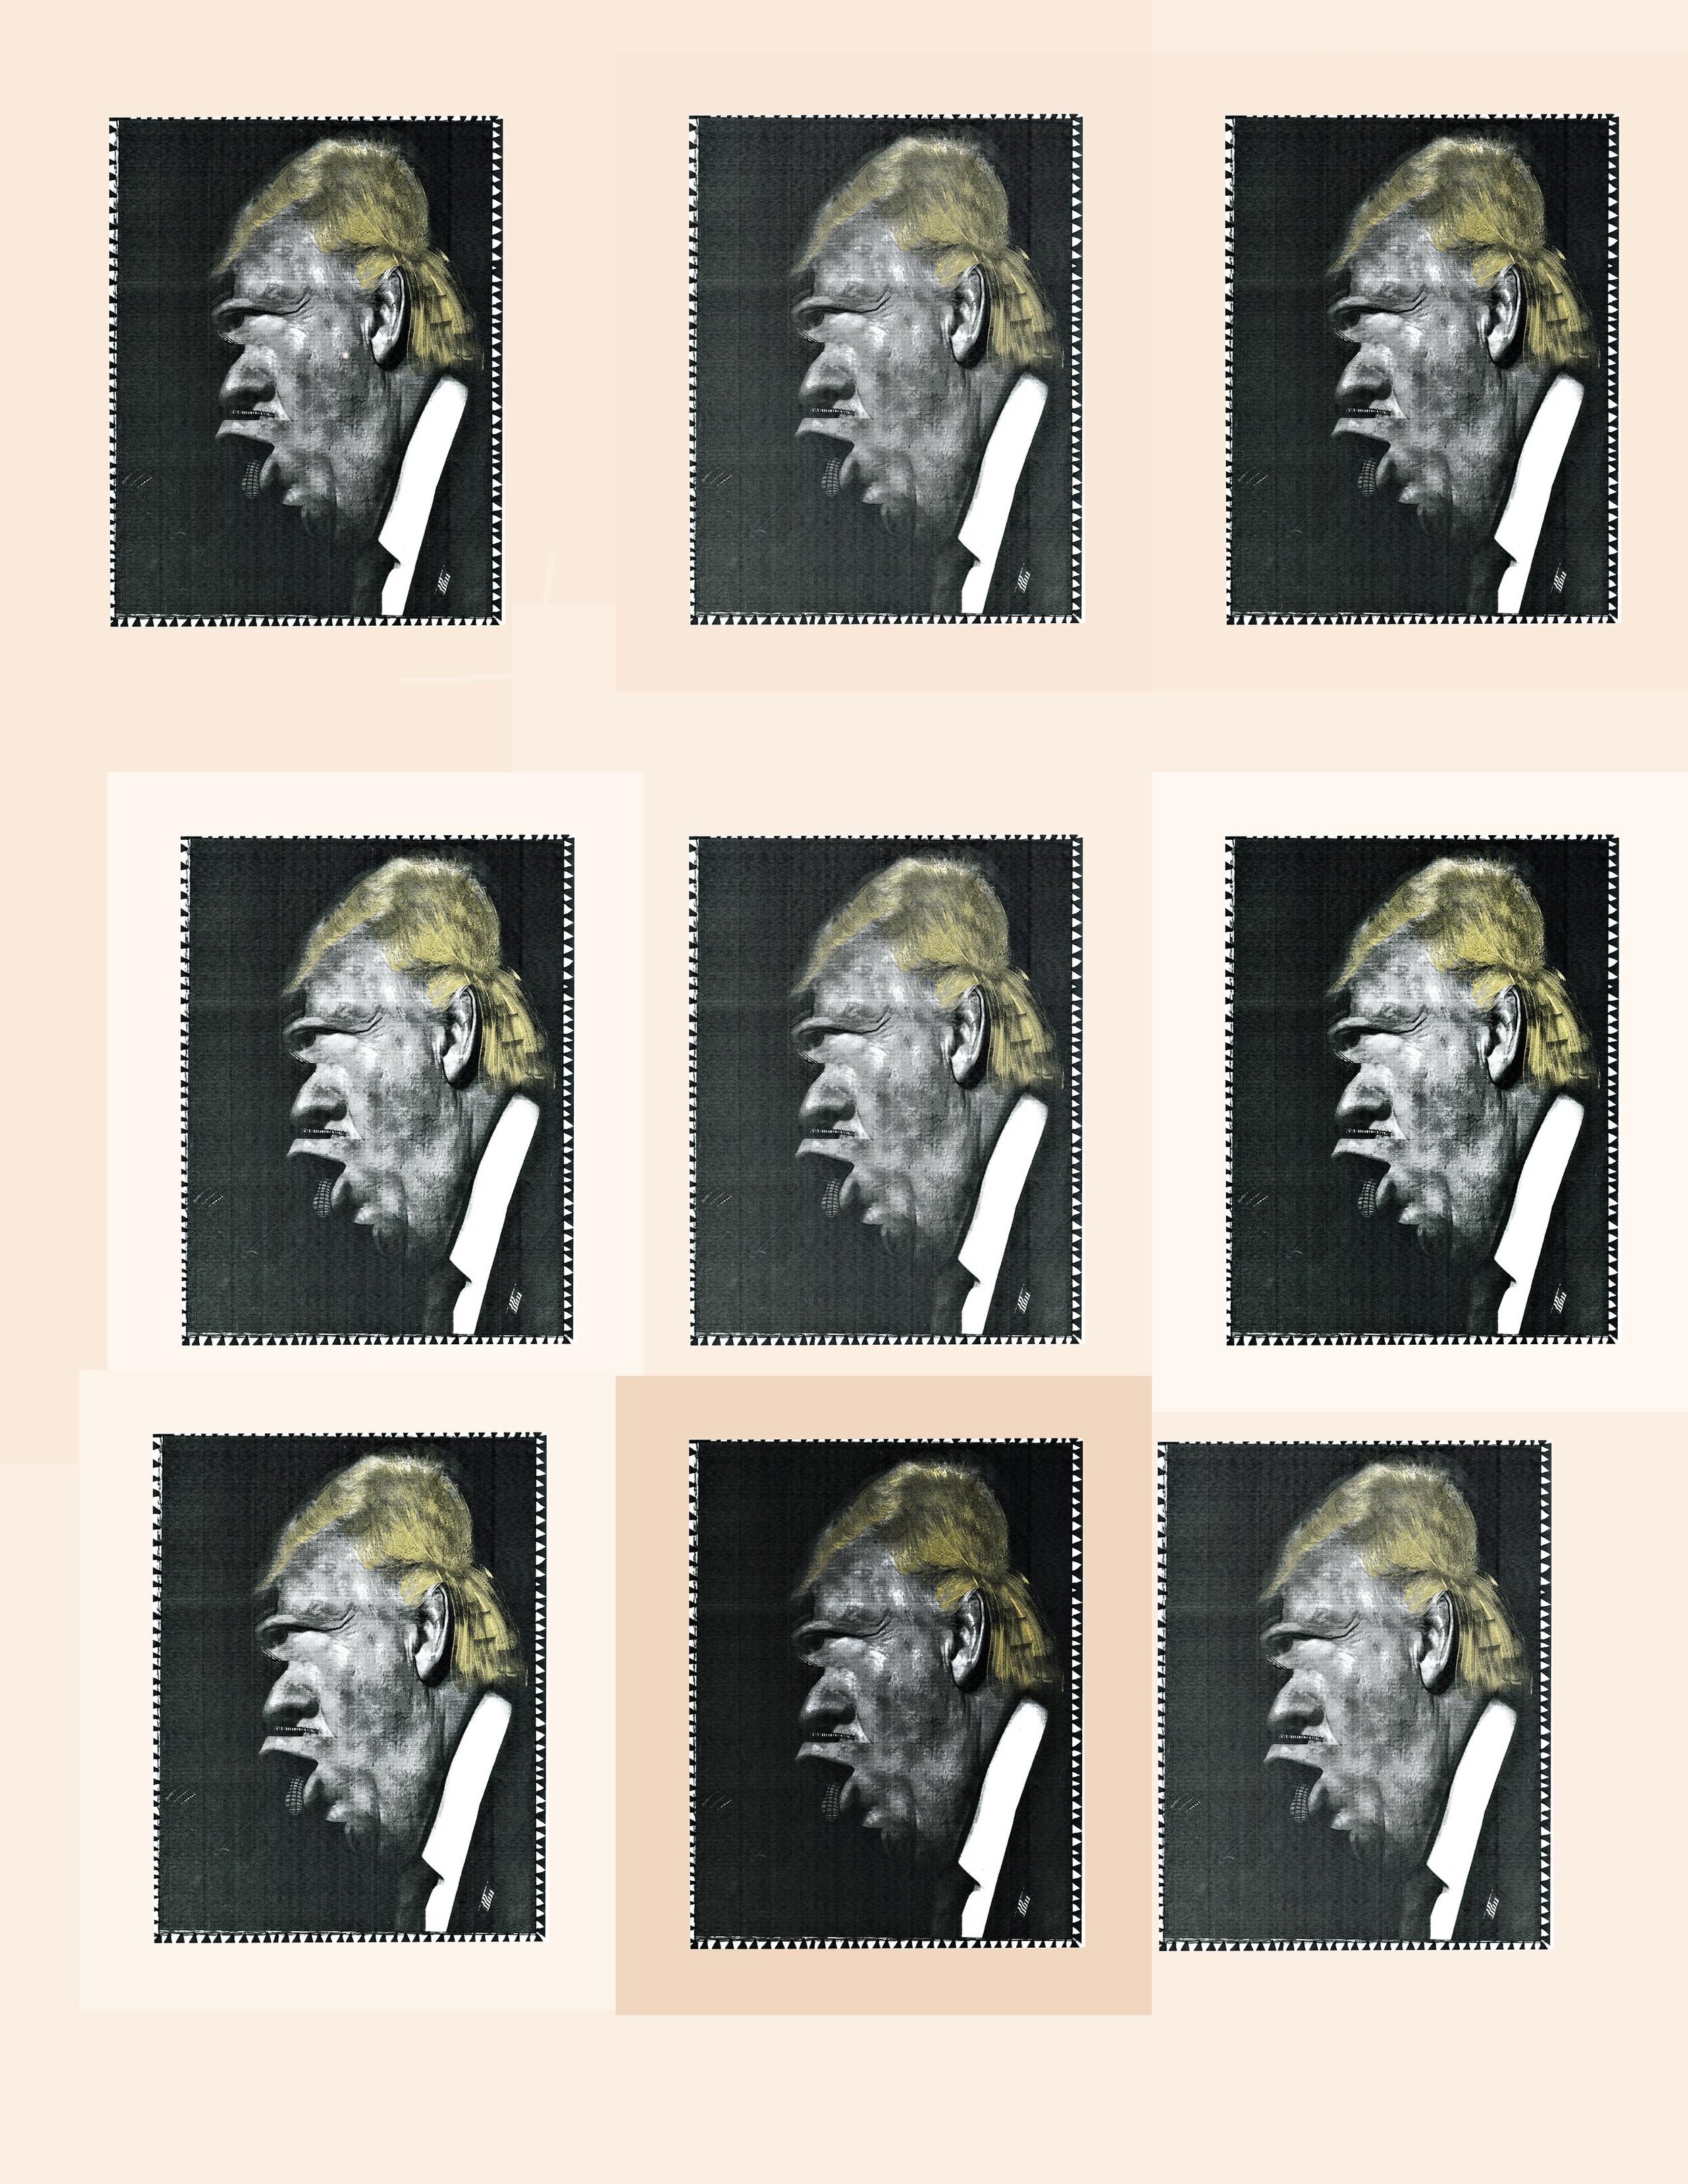 9 Trumps